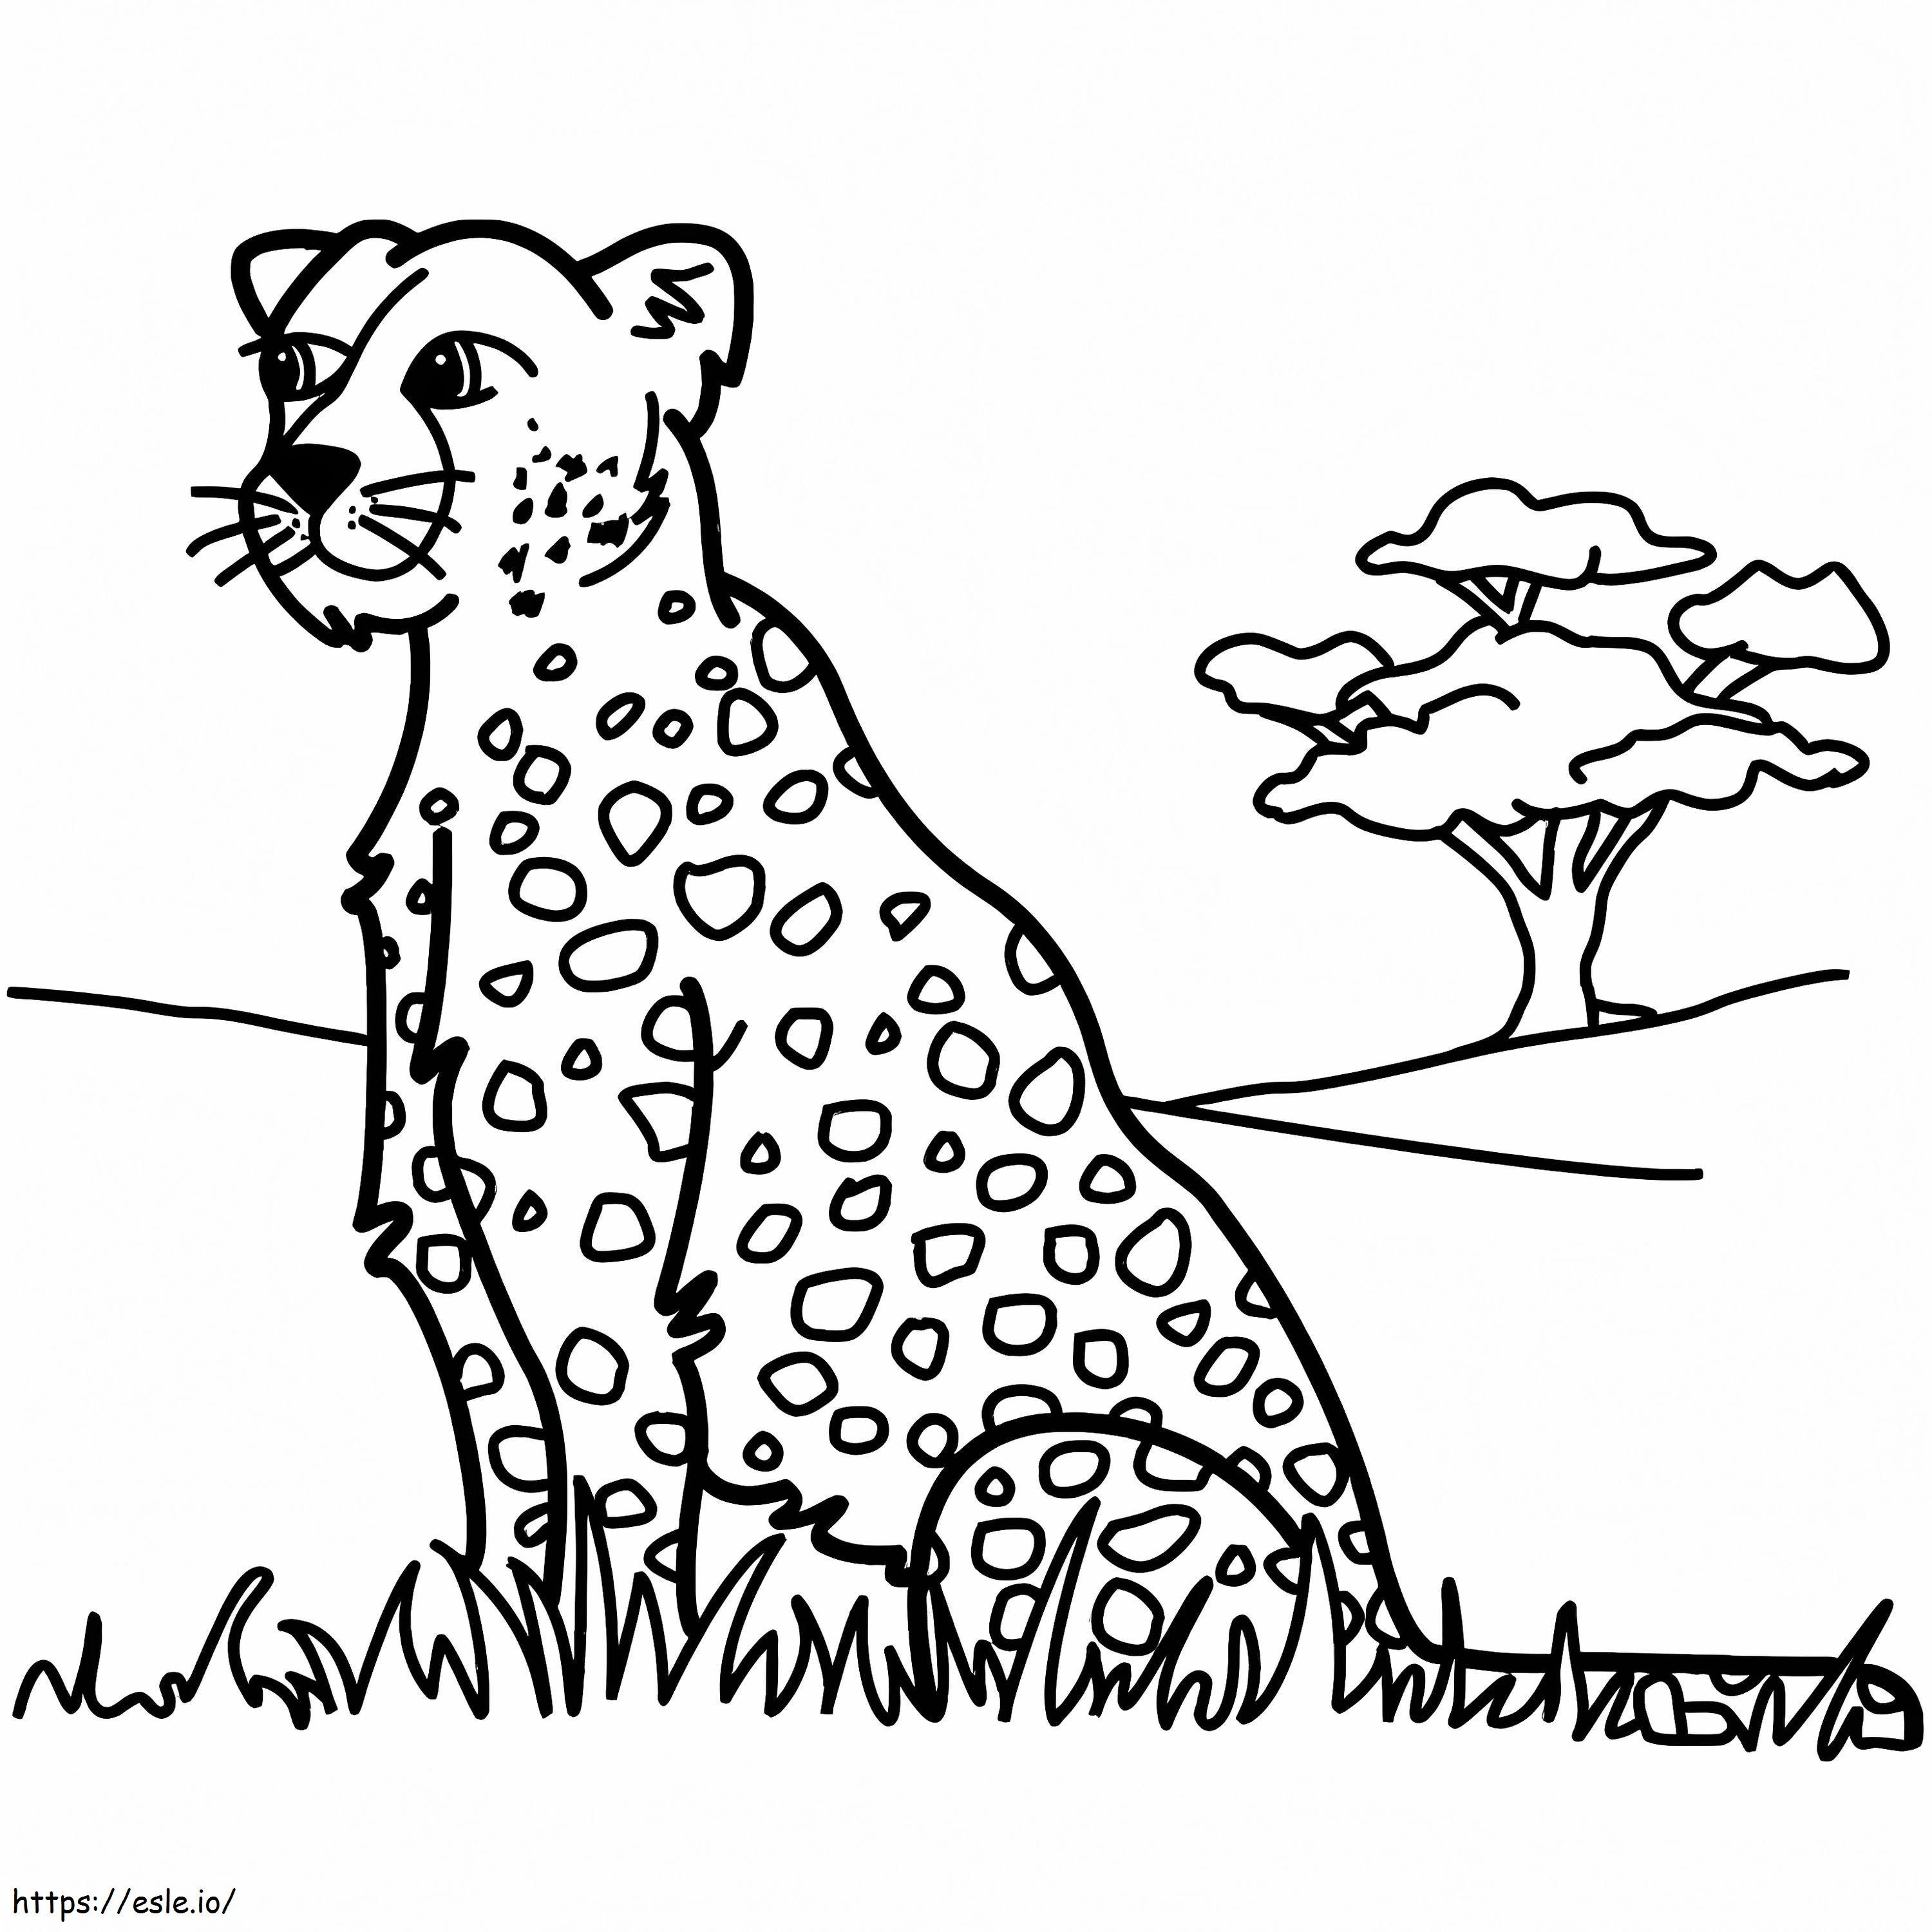 Leopardo Assis da colorare